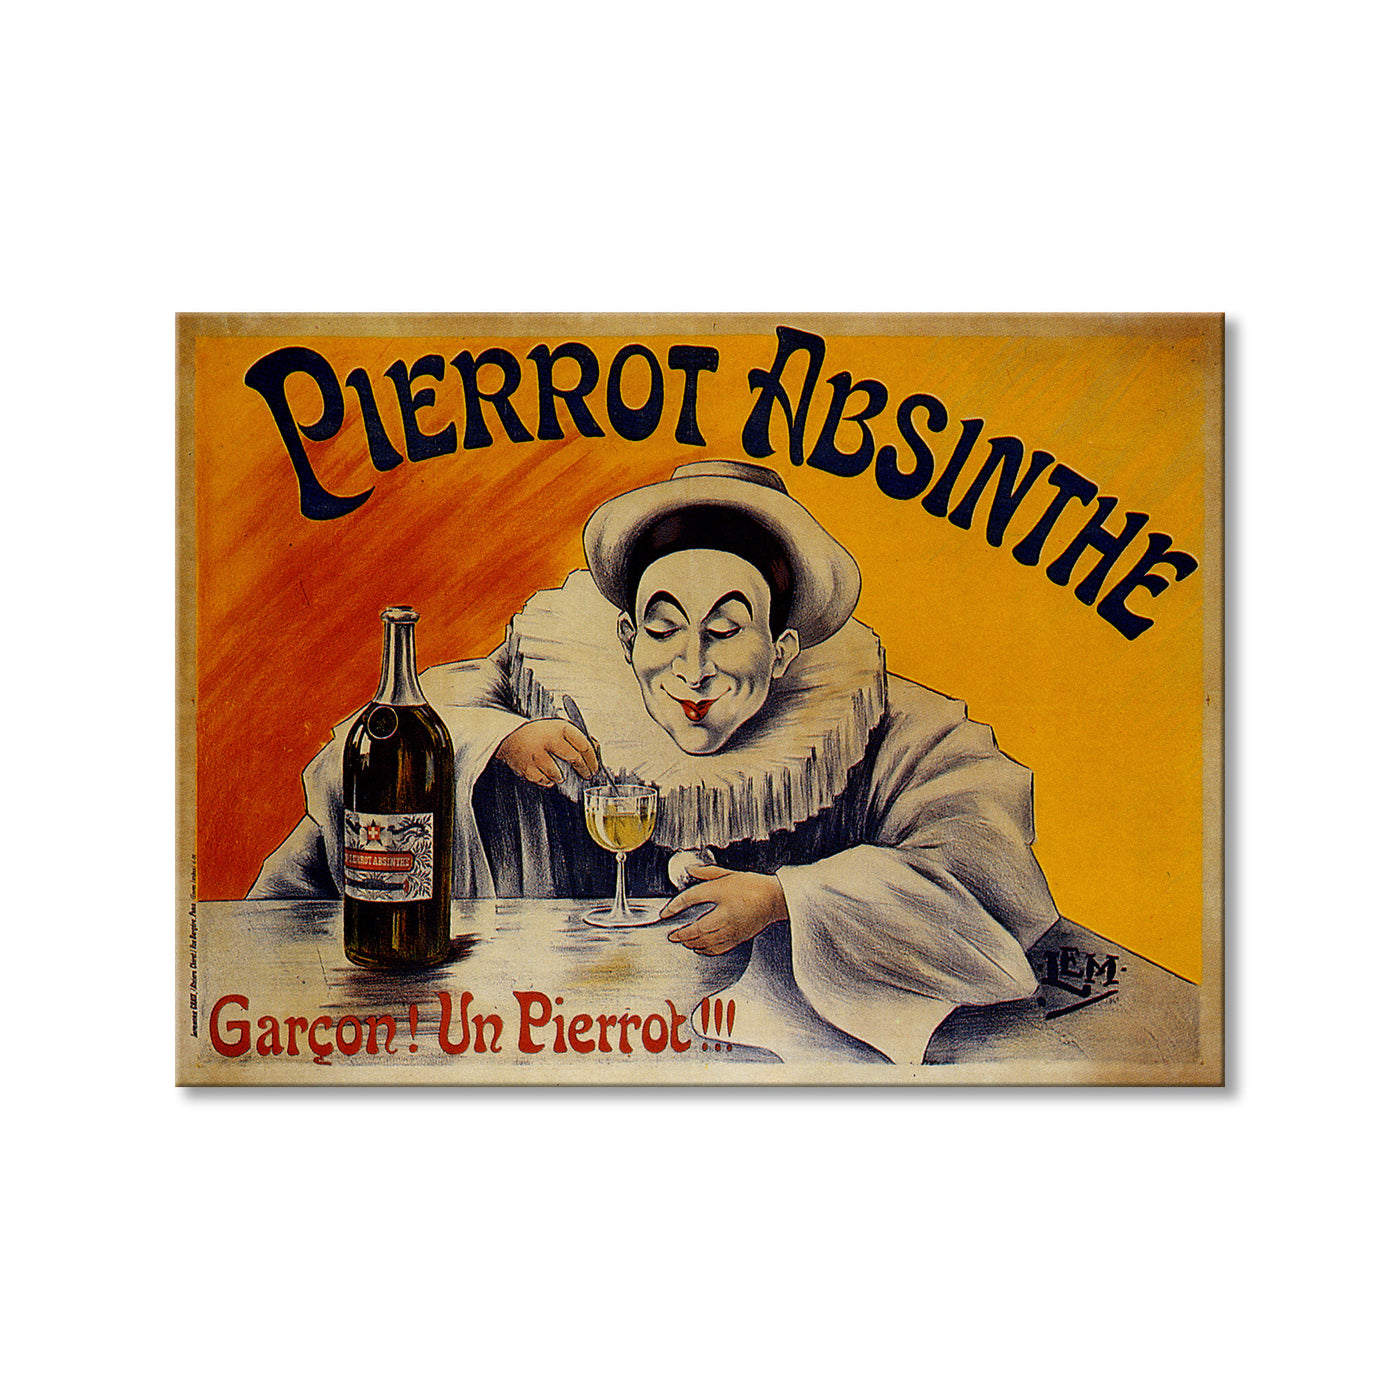 Pierrot Absinthe Garcon! Un Pierrot!